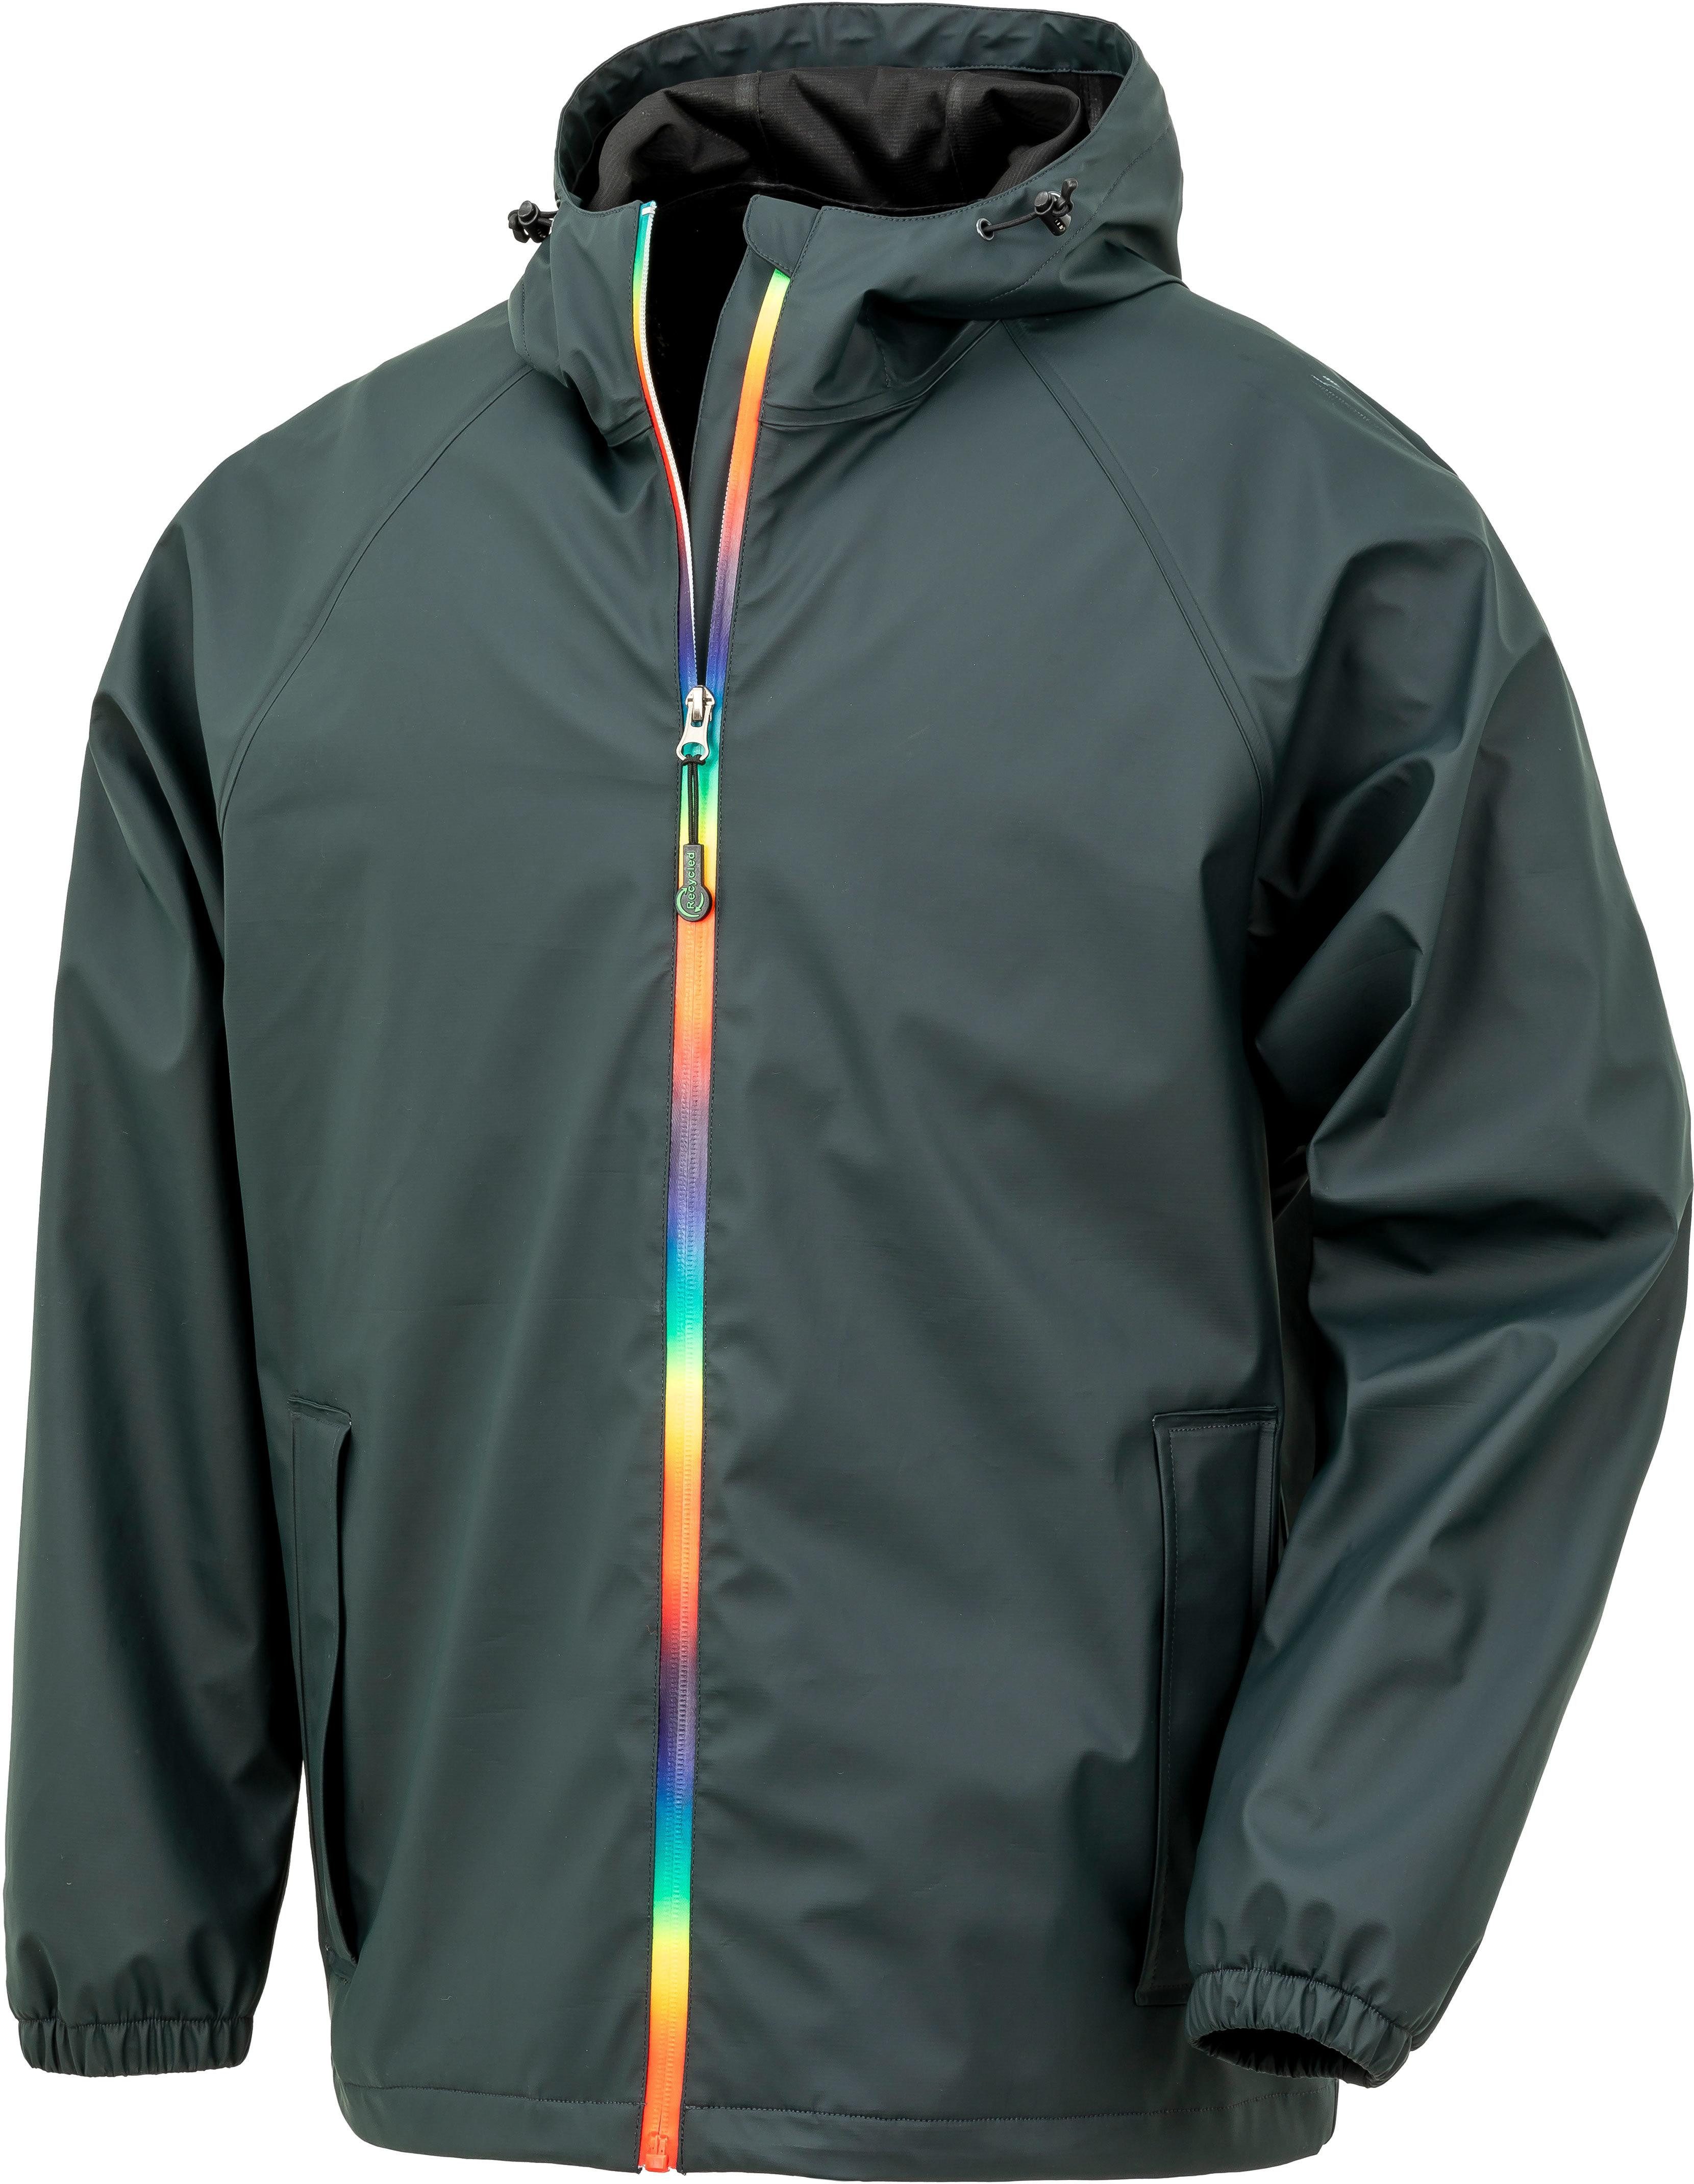 Result Outdoorjacke Prism PU Waterproof Jacket With Recycled Backing Regenjacke